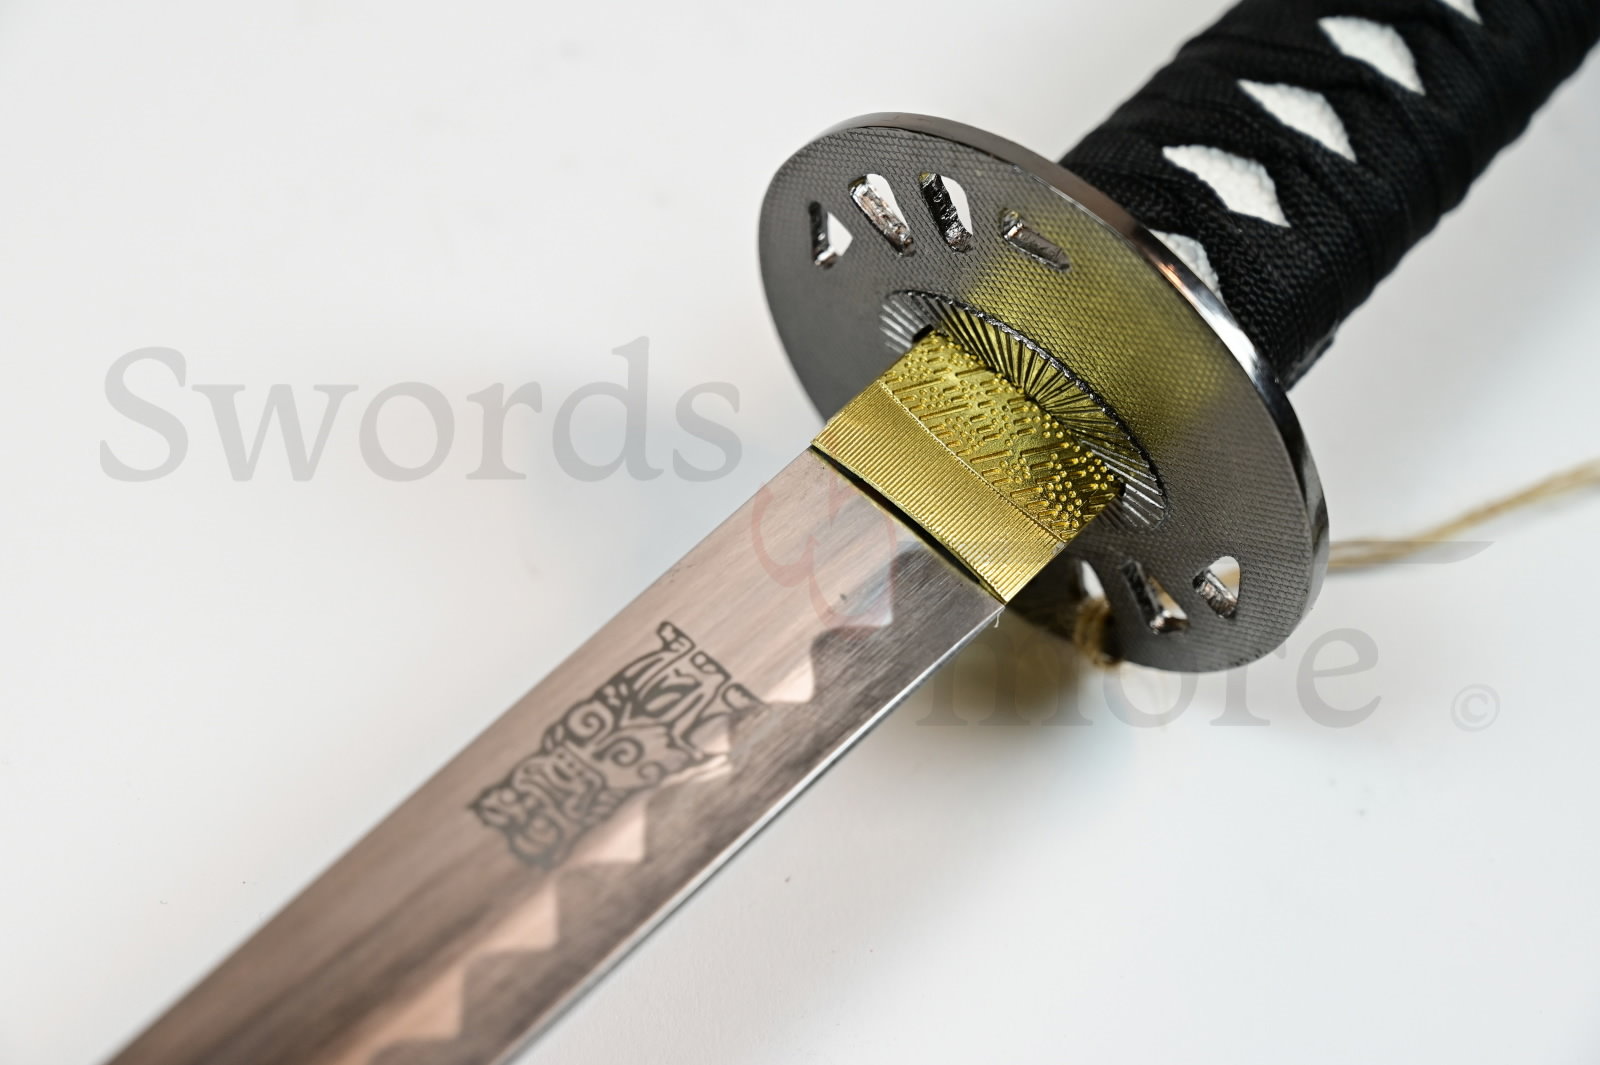 Kill Bill Hattori Hanzo Sword